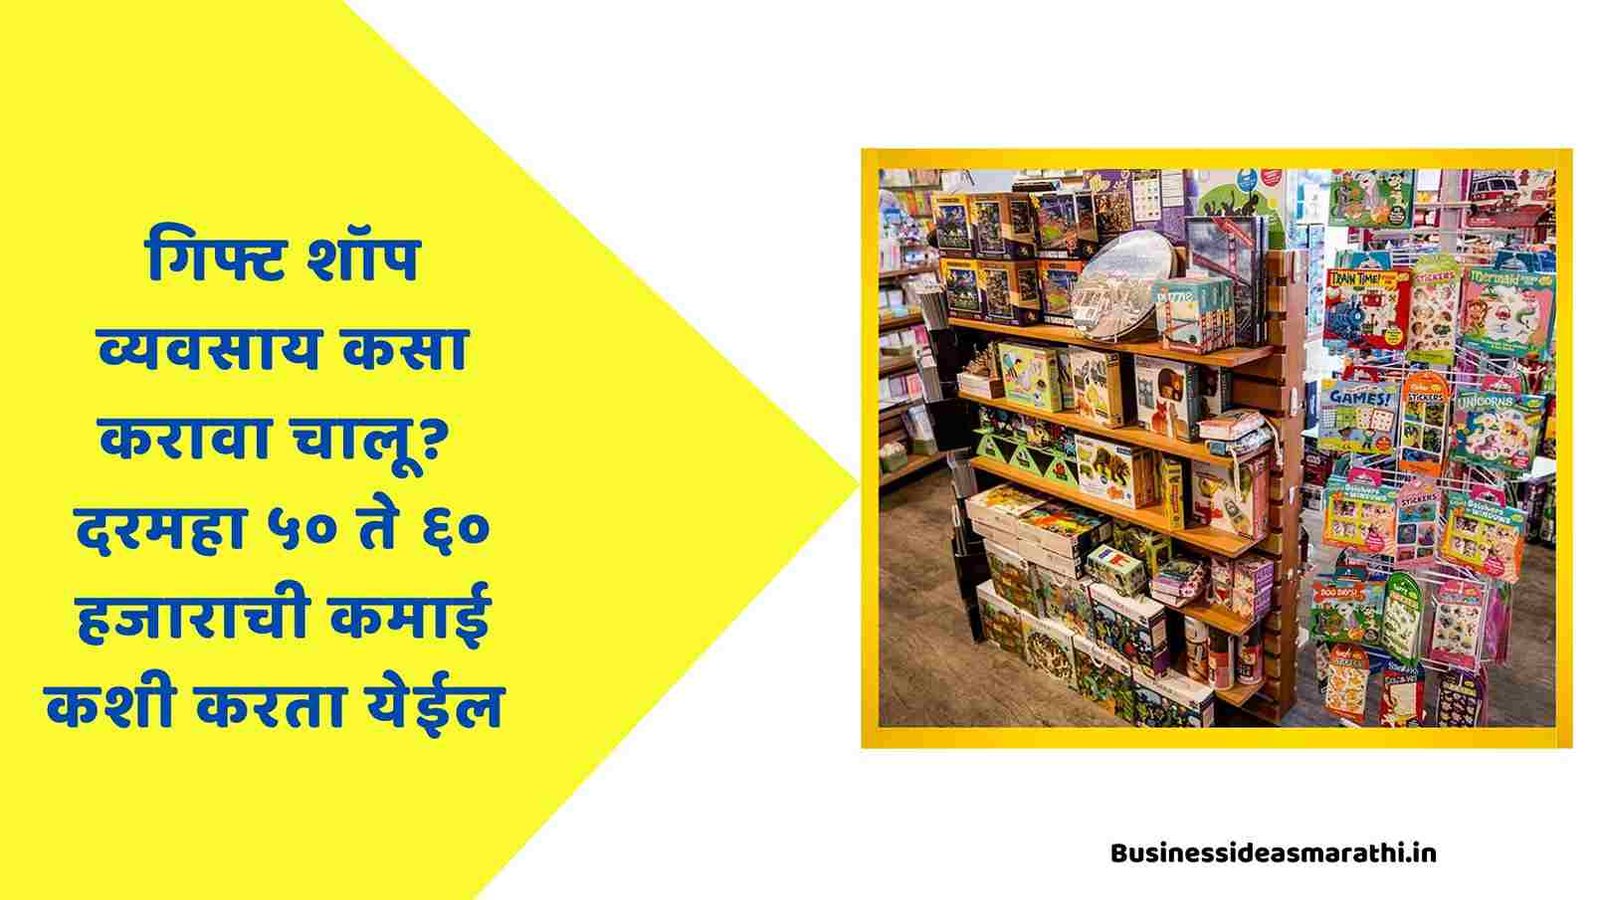 गिफ्ट शॉपचा व्यवसाय करा चालू खूप पैसे मिळतील | Gift Shop Business Information In Marathi